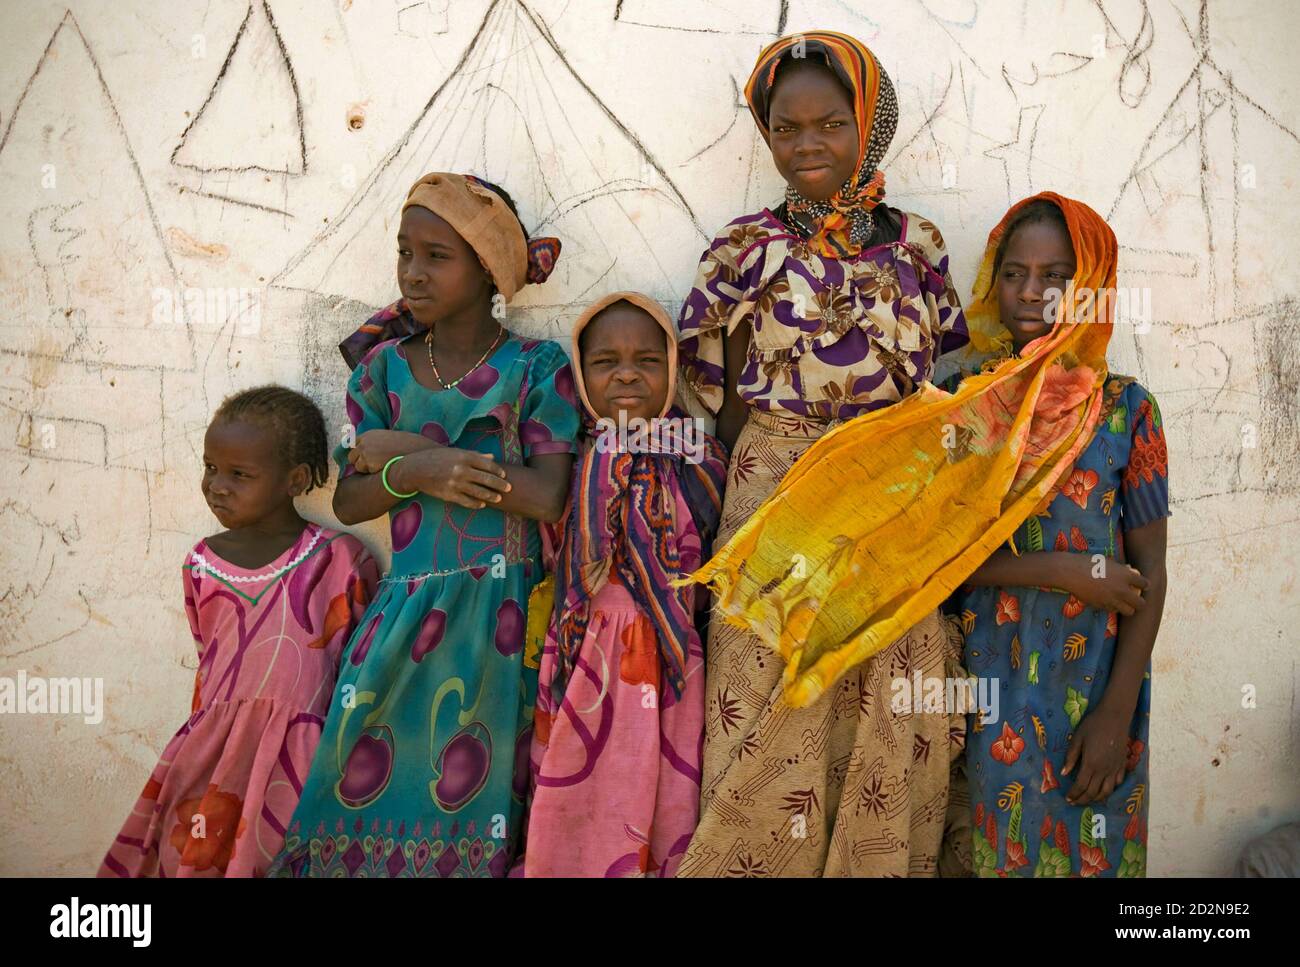 Flüchtlinge aus der westlichen Region von Darfur in Sudan warten, um durch das Flüchtlingshilfswerk der Vereinten Nationen im Djabal Camp in der Nähe von Gos Beida im Osten des Tschad, 6. Juni 2008 registriert werden. Flüchtlinge aus dem Konflikt in Darfur im Sudan und im Tschad appellierte an UN-Sicherheitsrat Gesandten am Freitag für mehr internationalen Schutz zu besuchen, damit sie in ihre Häuser zurückkehren können. REUTERS/Finbarr O' Reilly (Tschad) Stockfoto